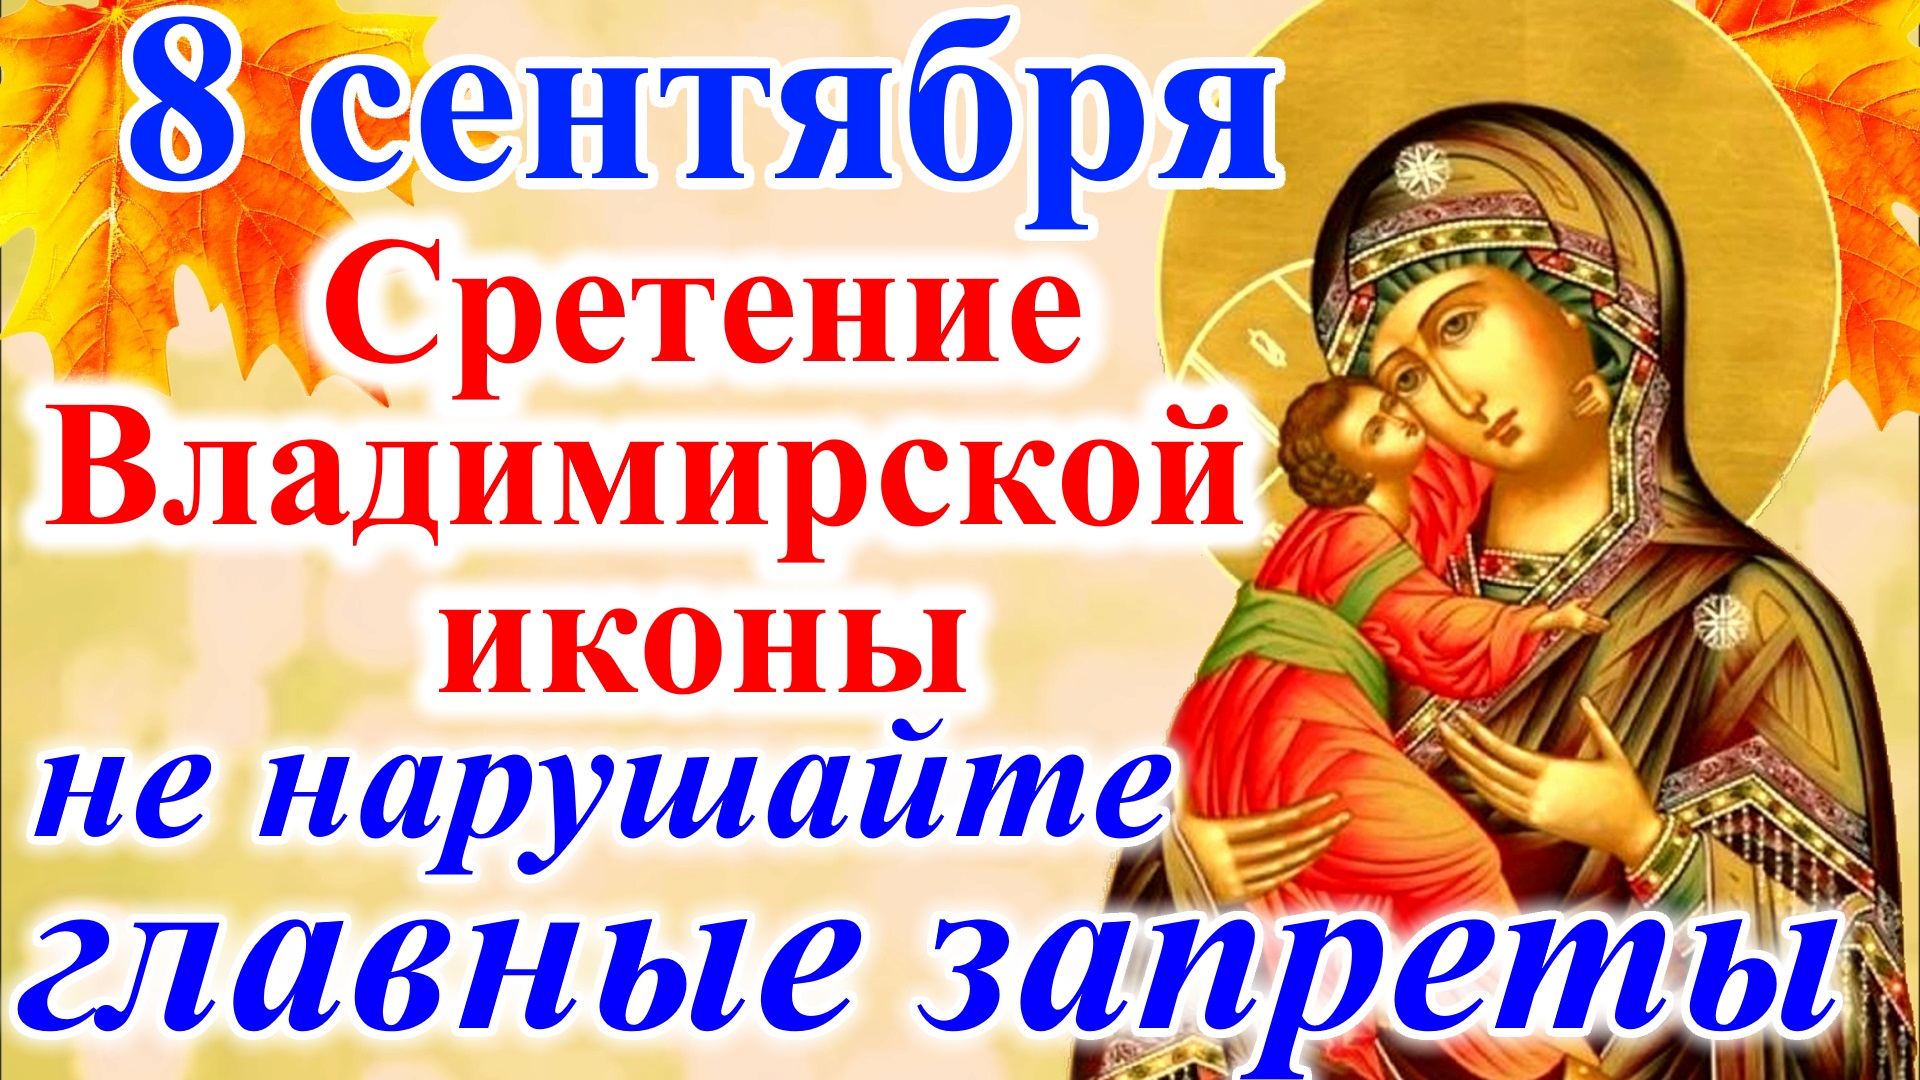 Сретение Владимирской иконы Божией матери поздравляю